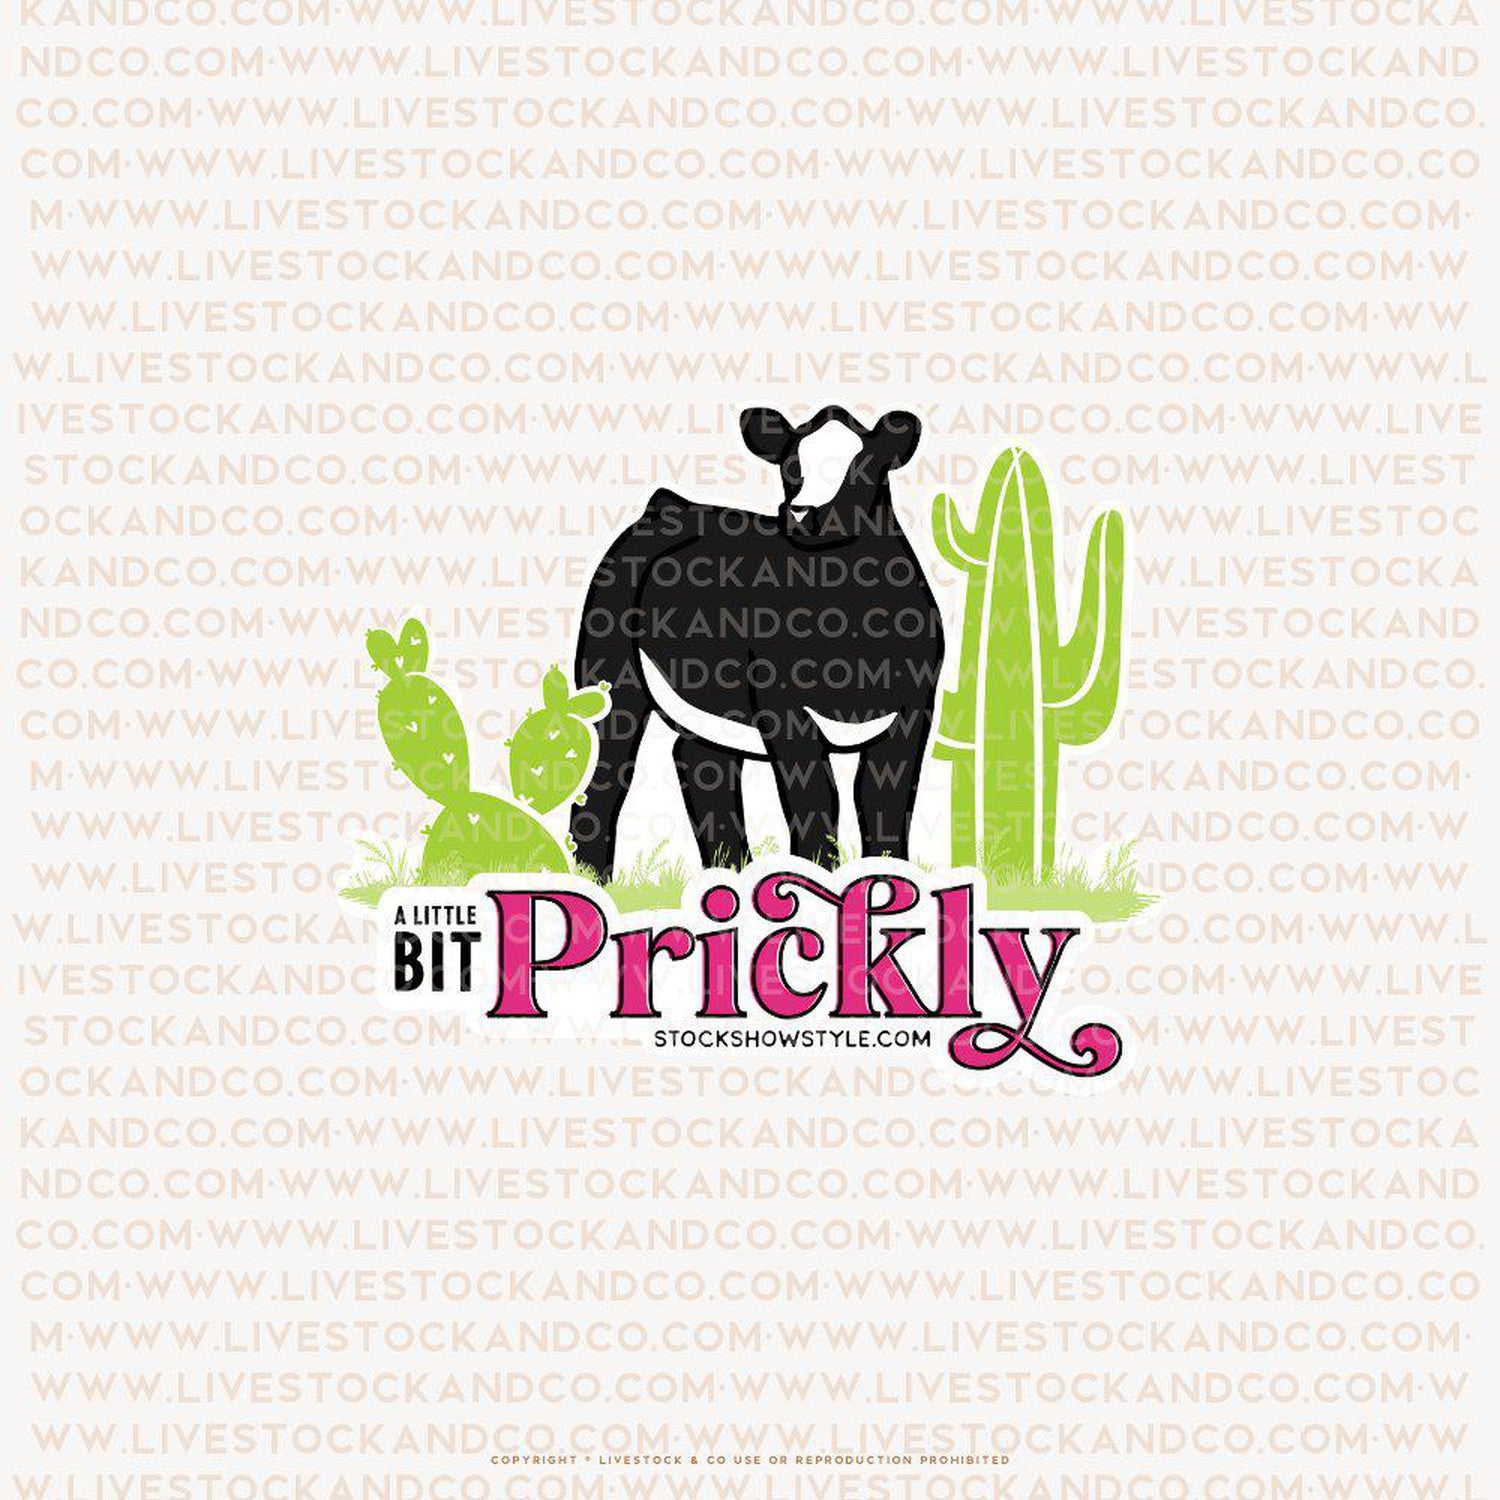 Custom Made Prickly Livestock Stickers Stock Show Livestock - Livestock &amp; Co. Boutique